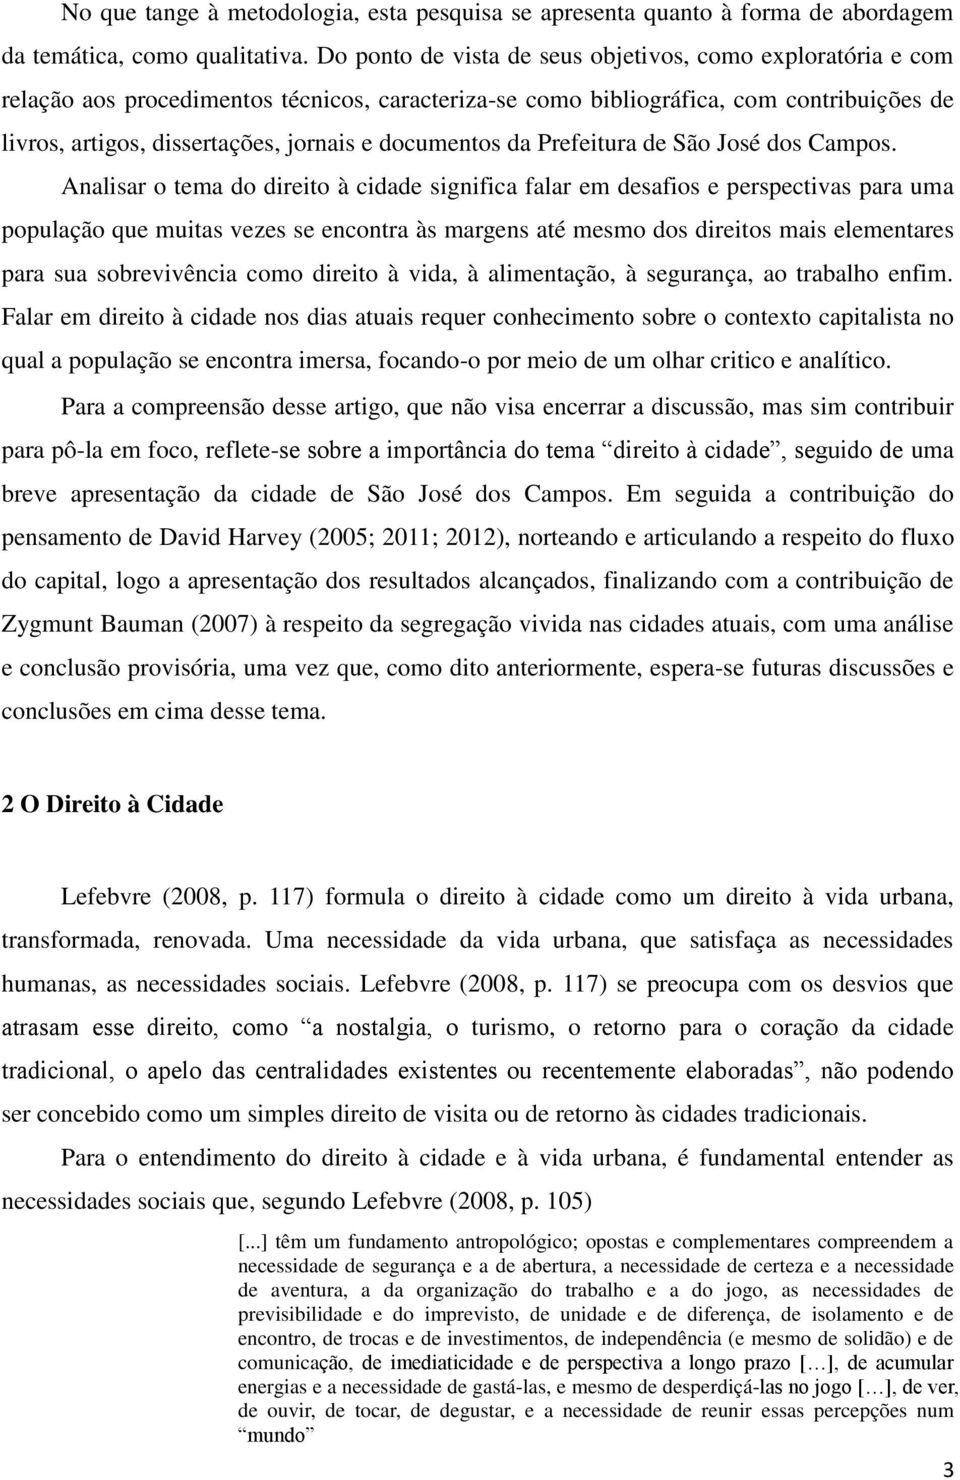 documentos da Prefeitura de São José dos Campos.